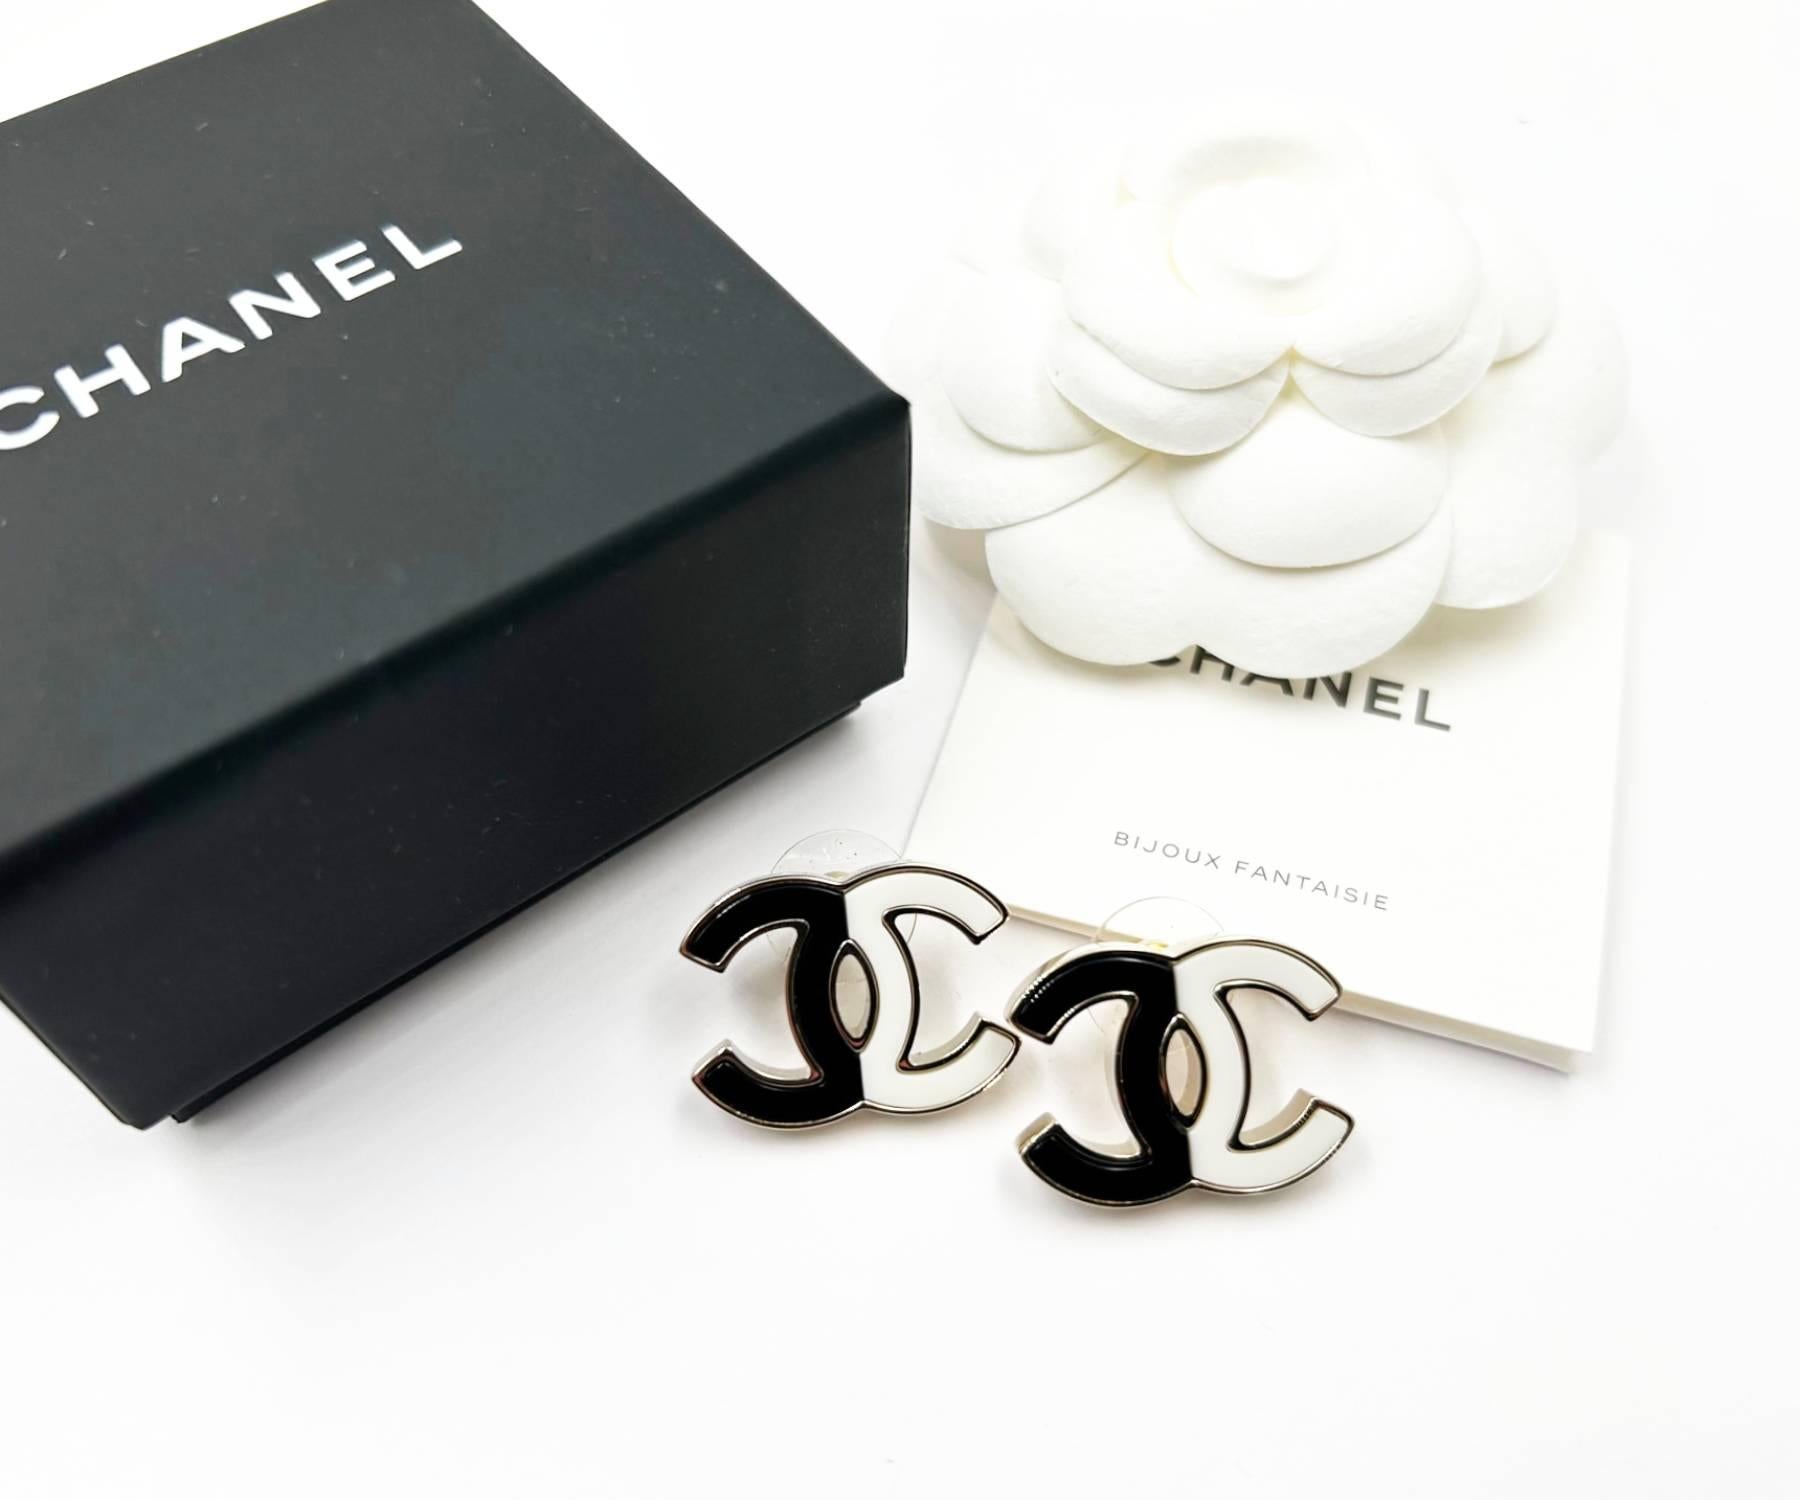 Chanel Classic Gold CC Schwarz Weiß Halb Halb Große Ohrstecker Piercing Ohrringe

*Markiert 23
*Hergestellt in Italien
*Kommt mit der Originalschachtel, -tasche und -broschüre, im Original-Set

-Es ist ungefähr 1